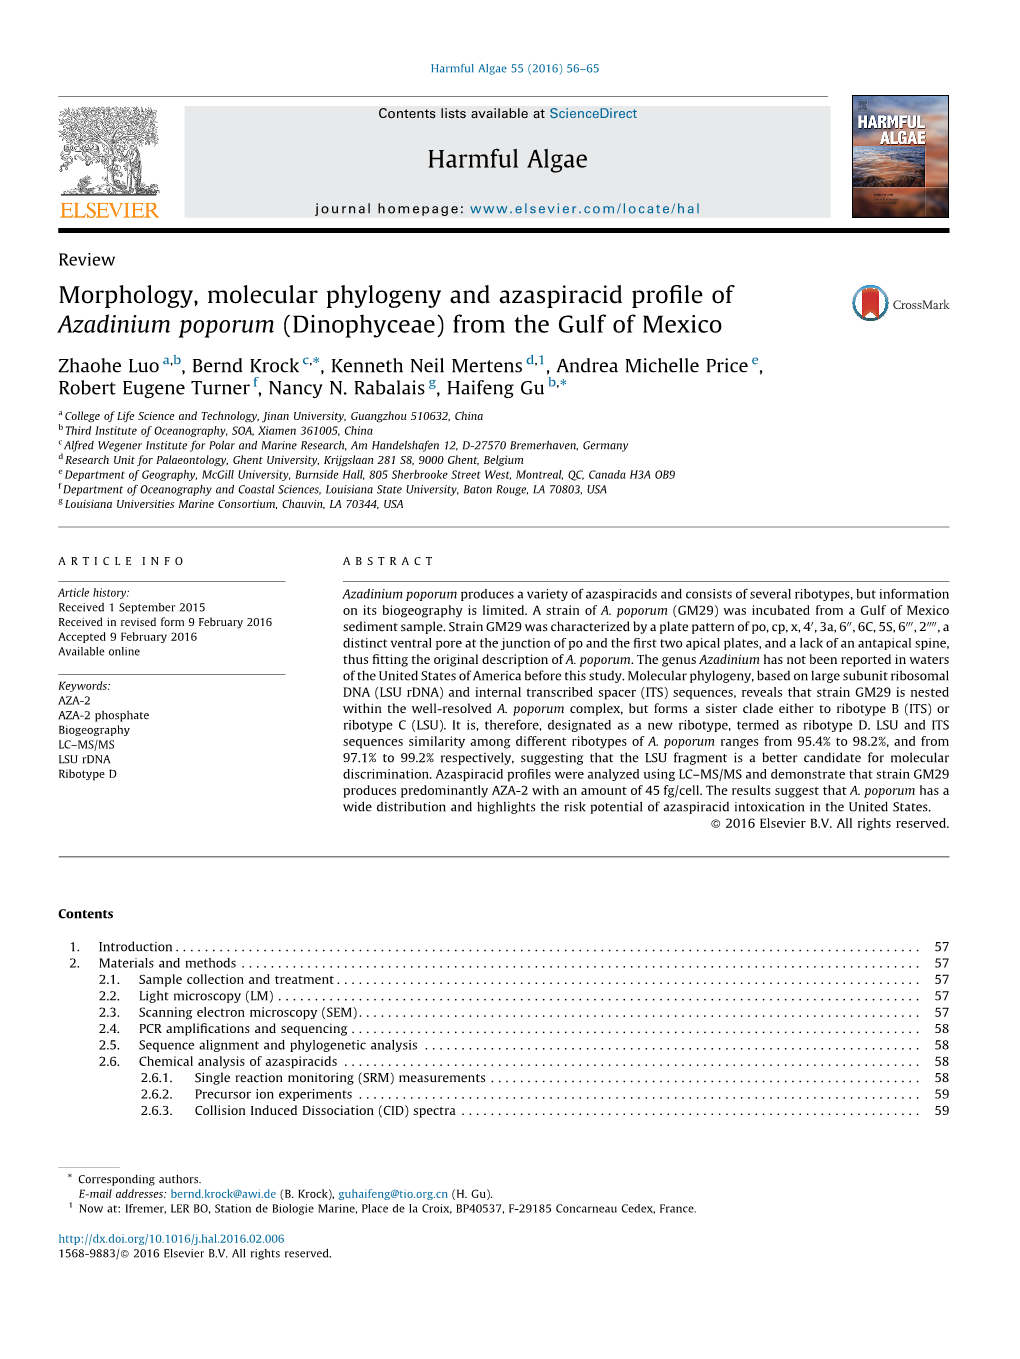 Morphology, Molecular Phylogeny and Azaspiracid Profile of Azadinium